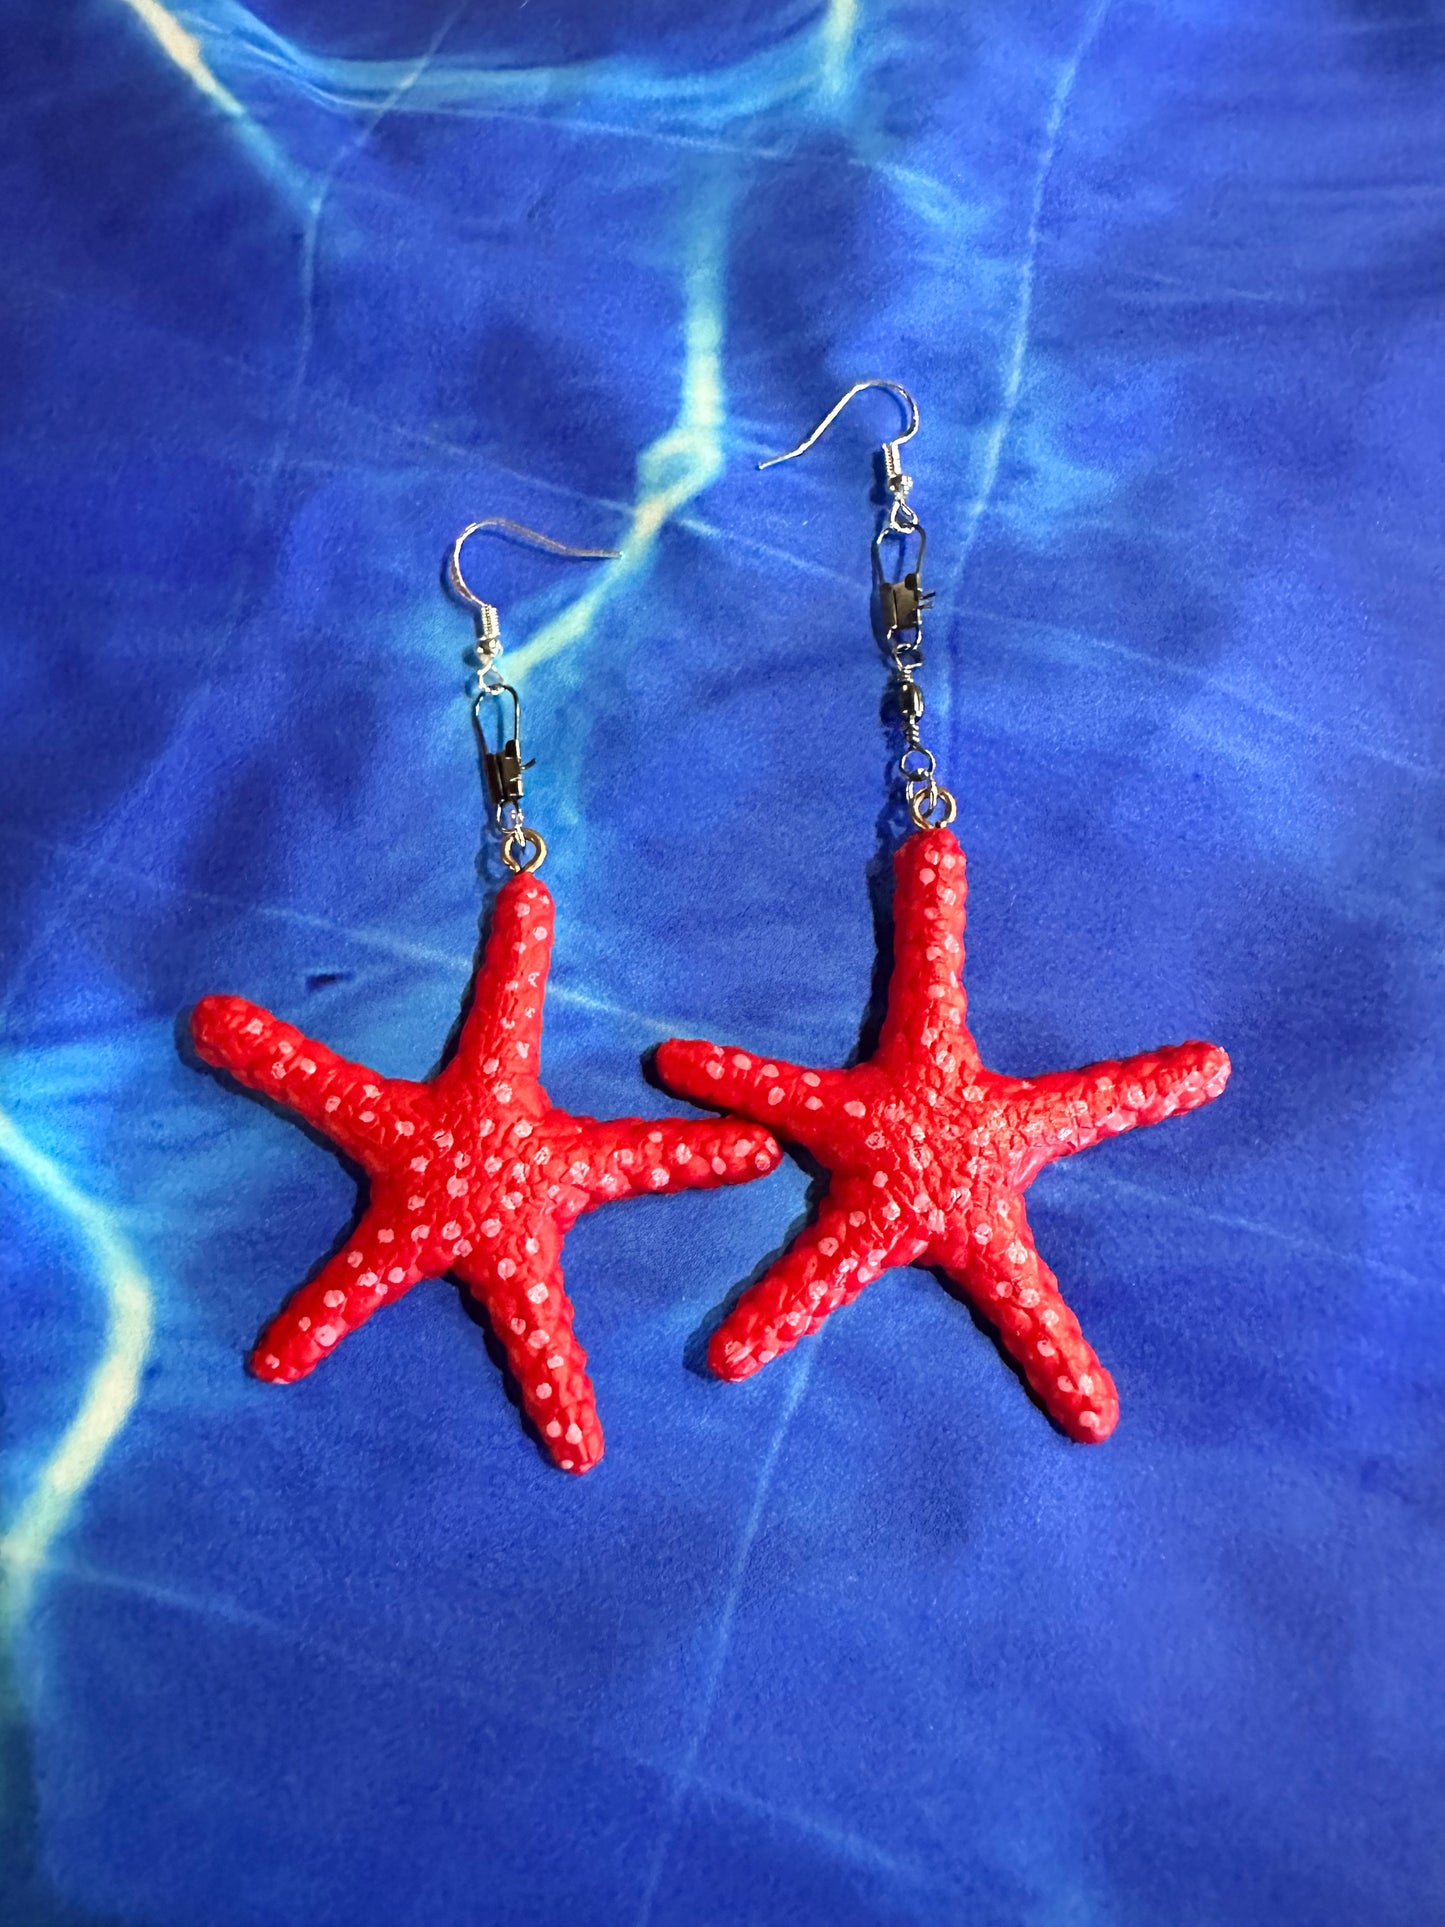 Star fish earrings